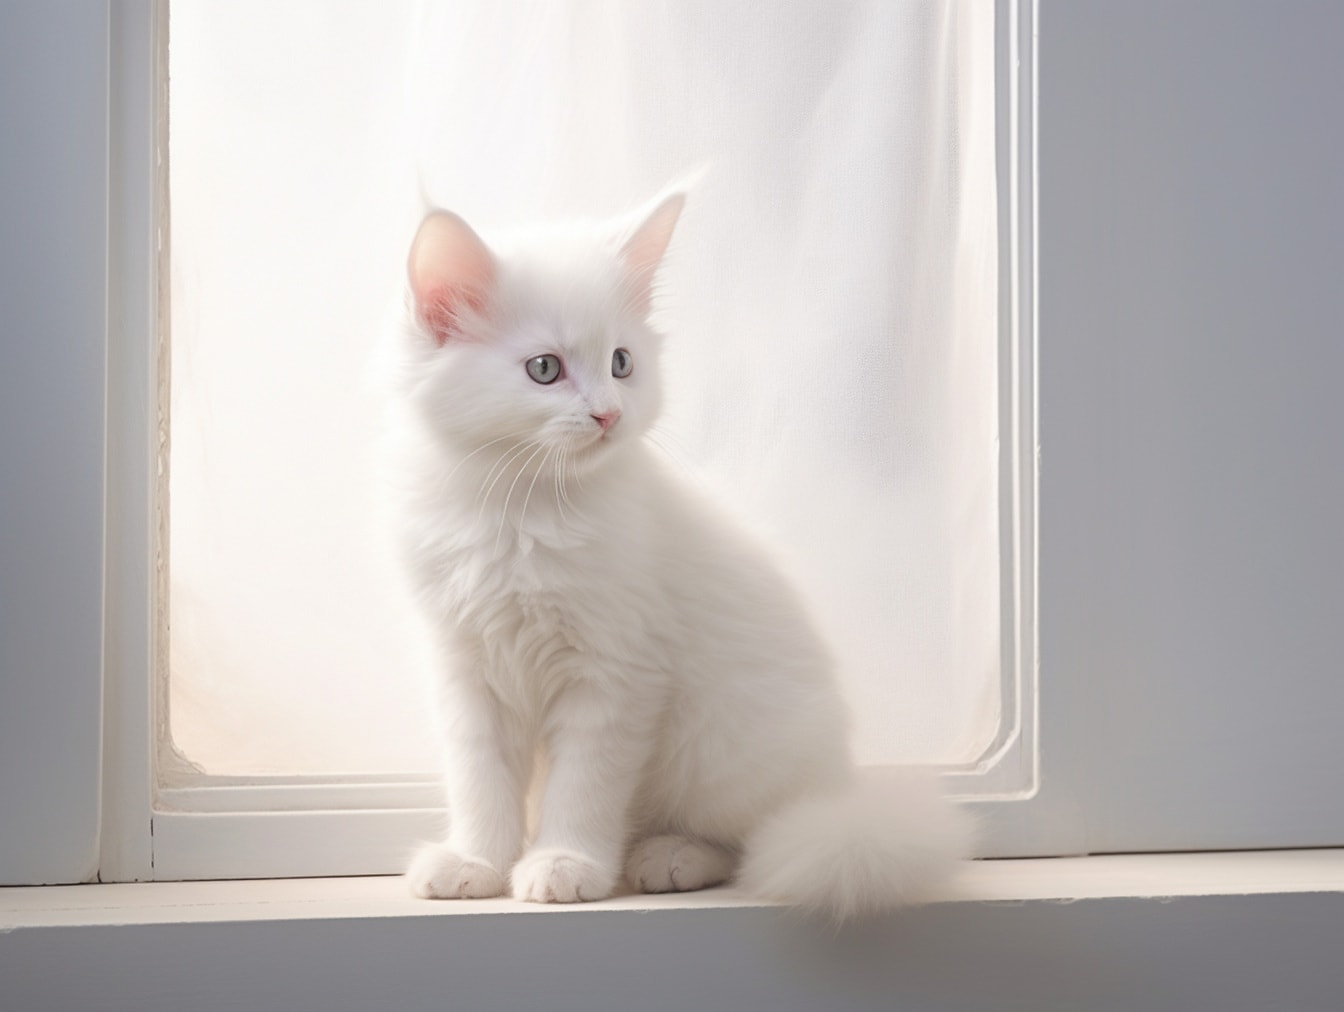 Hình minh họa mèo con trắng thuần chủng ngồi bên cửa sổ